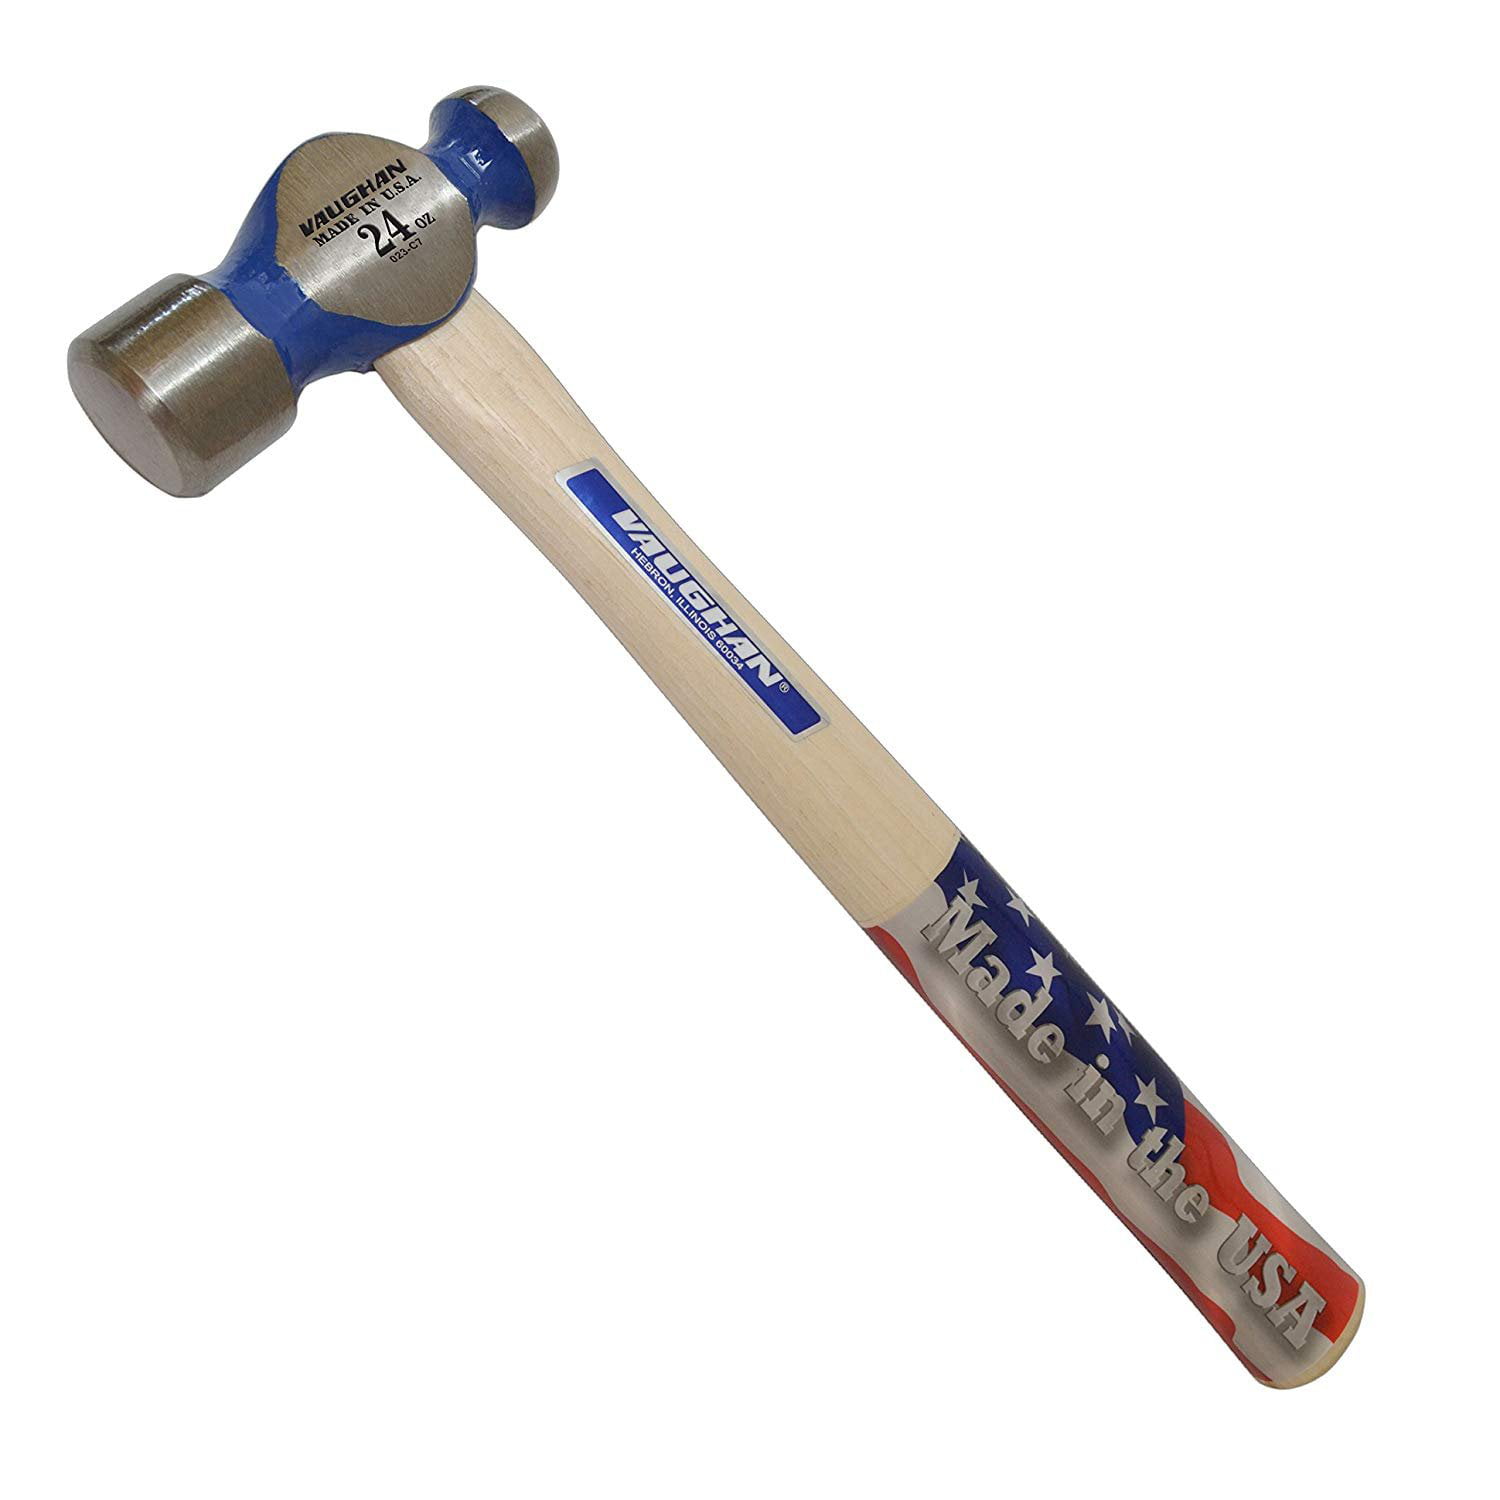 Blue 24 Oz New Hammer Blue Spot Tools Fibreglass Ball Pein Hammer 